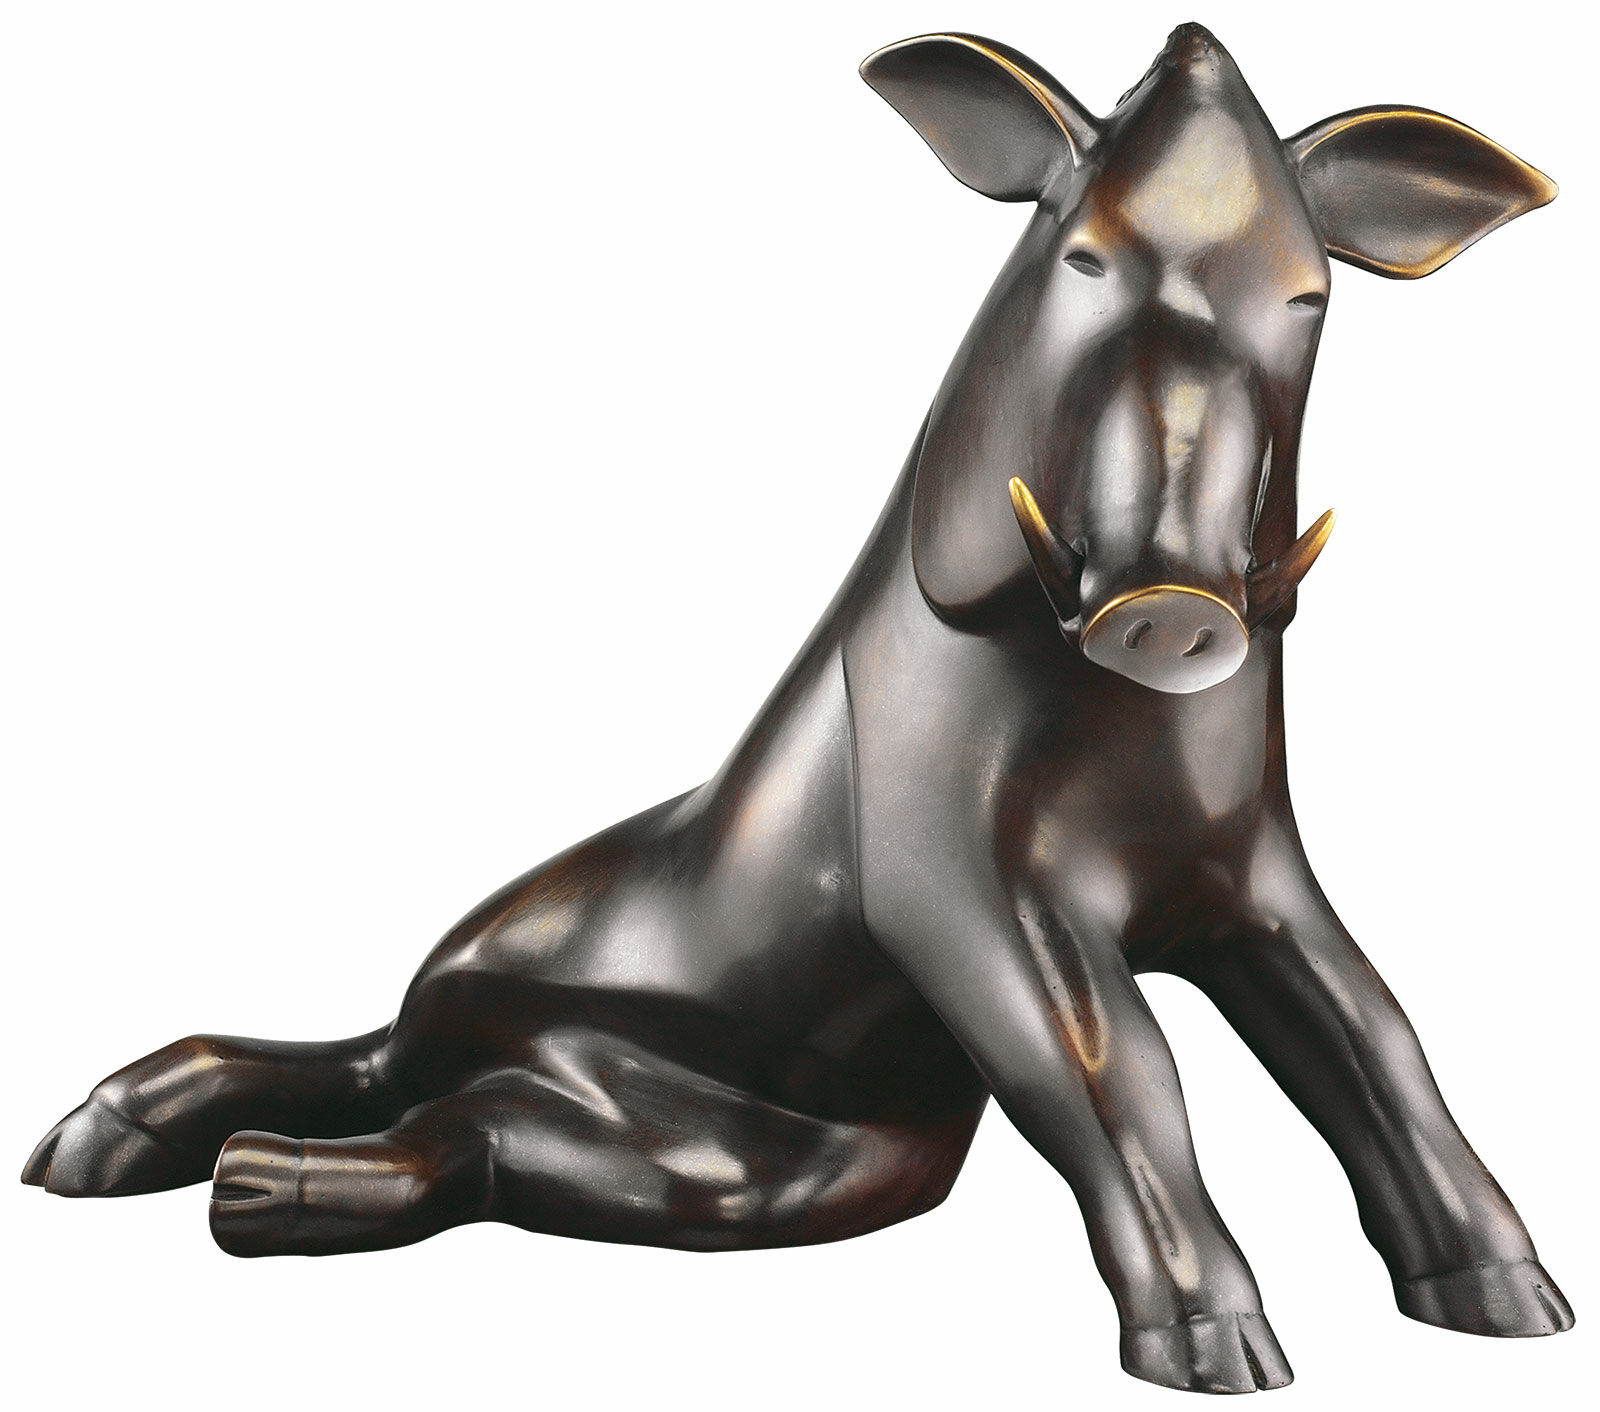 Sculpture "Boar", bronze by Evert den Hartog